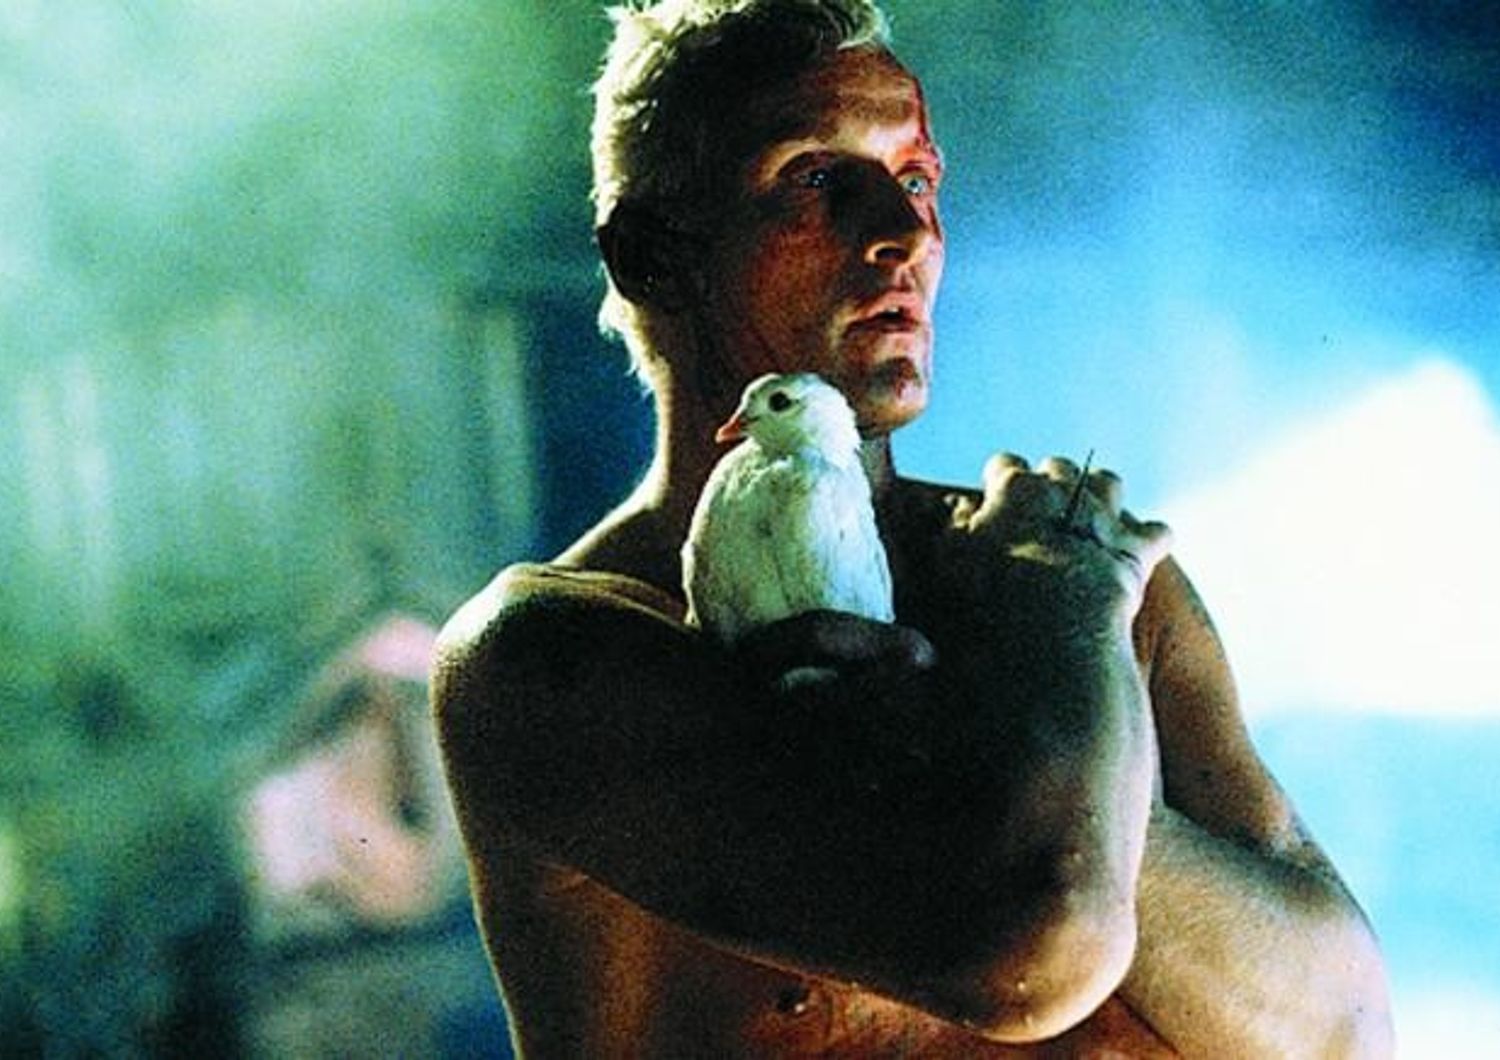 Blade Runner del 1982 - Rutger Hauer nella scena finale